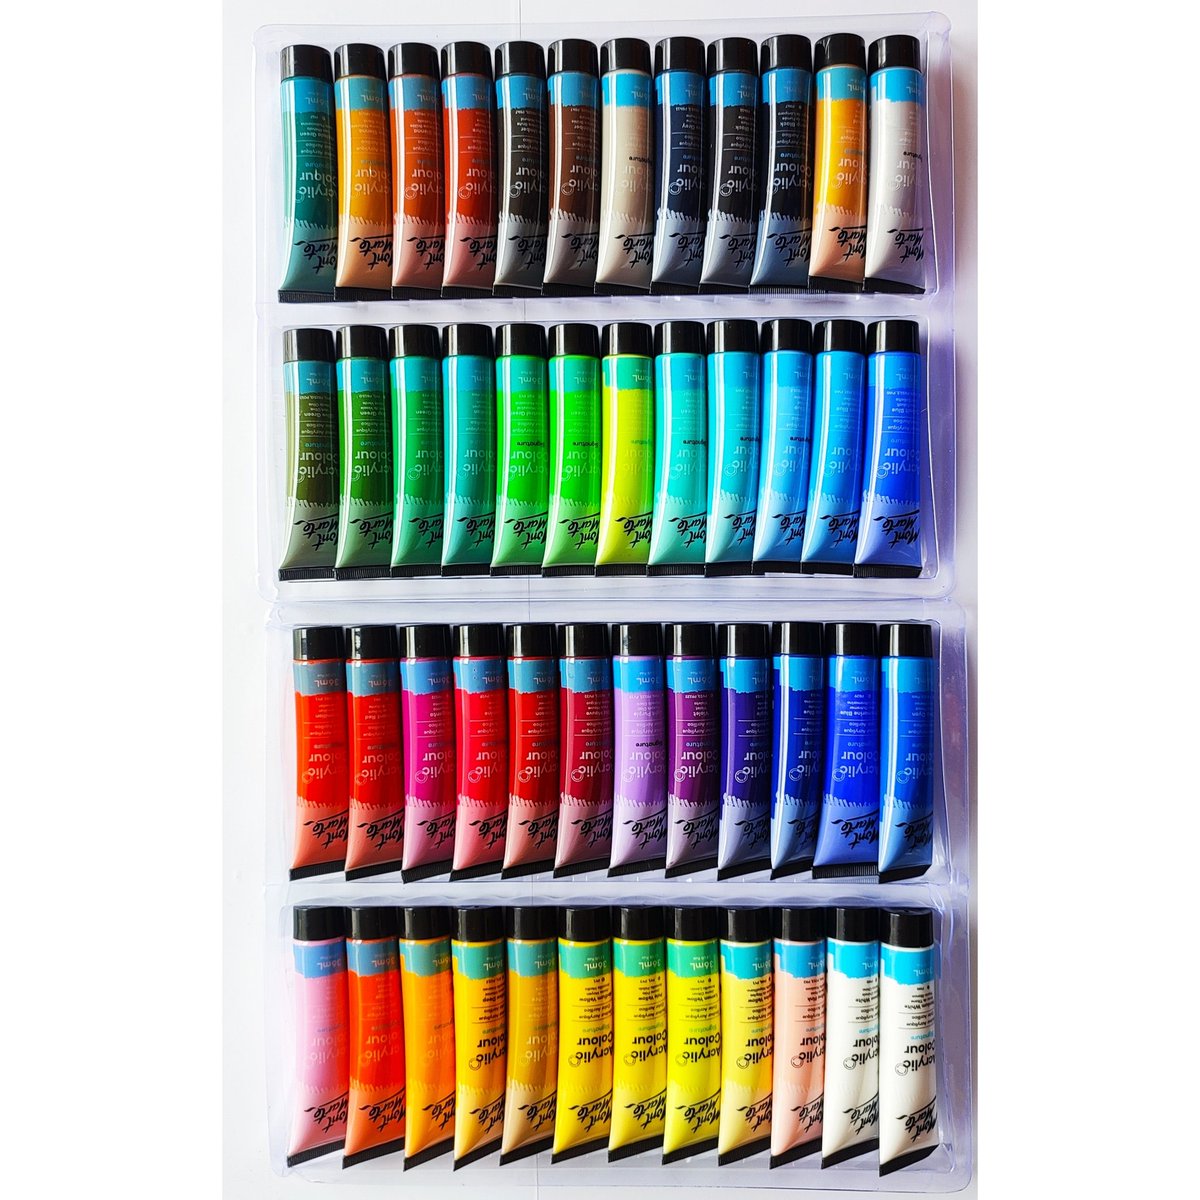 𝘽𝙧𝙖𝙣𝙙 - 𝙈𝙤𝙣𝙩 𝙈𝙖𝙧𝙩𝙚
Acrylic Colour Paint set 🎨
48 Shades 🖌🎨
#acrylic #colour #acryliccolour #post #newpost #viral #viralpost #acryliccolourset #paintcolour #montmarte #48shades #trending #trendingpost #explore #amazon  #explorepage  #amazonfinds #art #artist #X